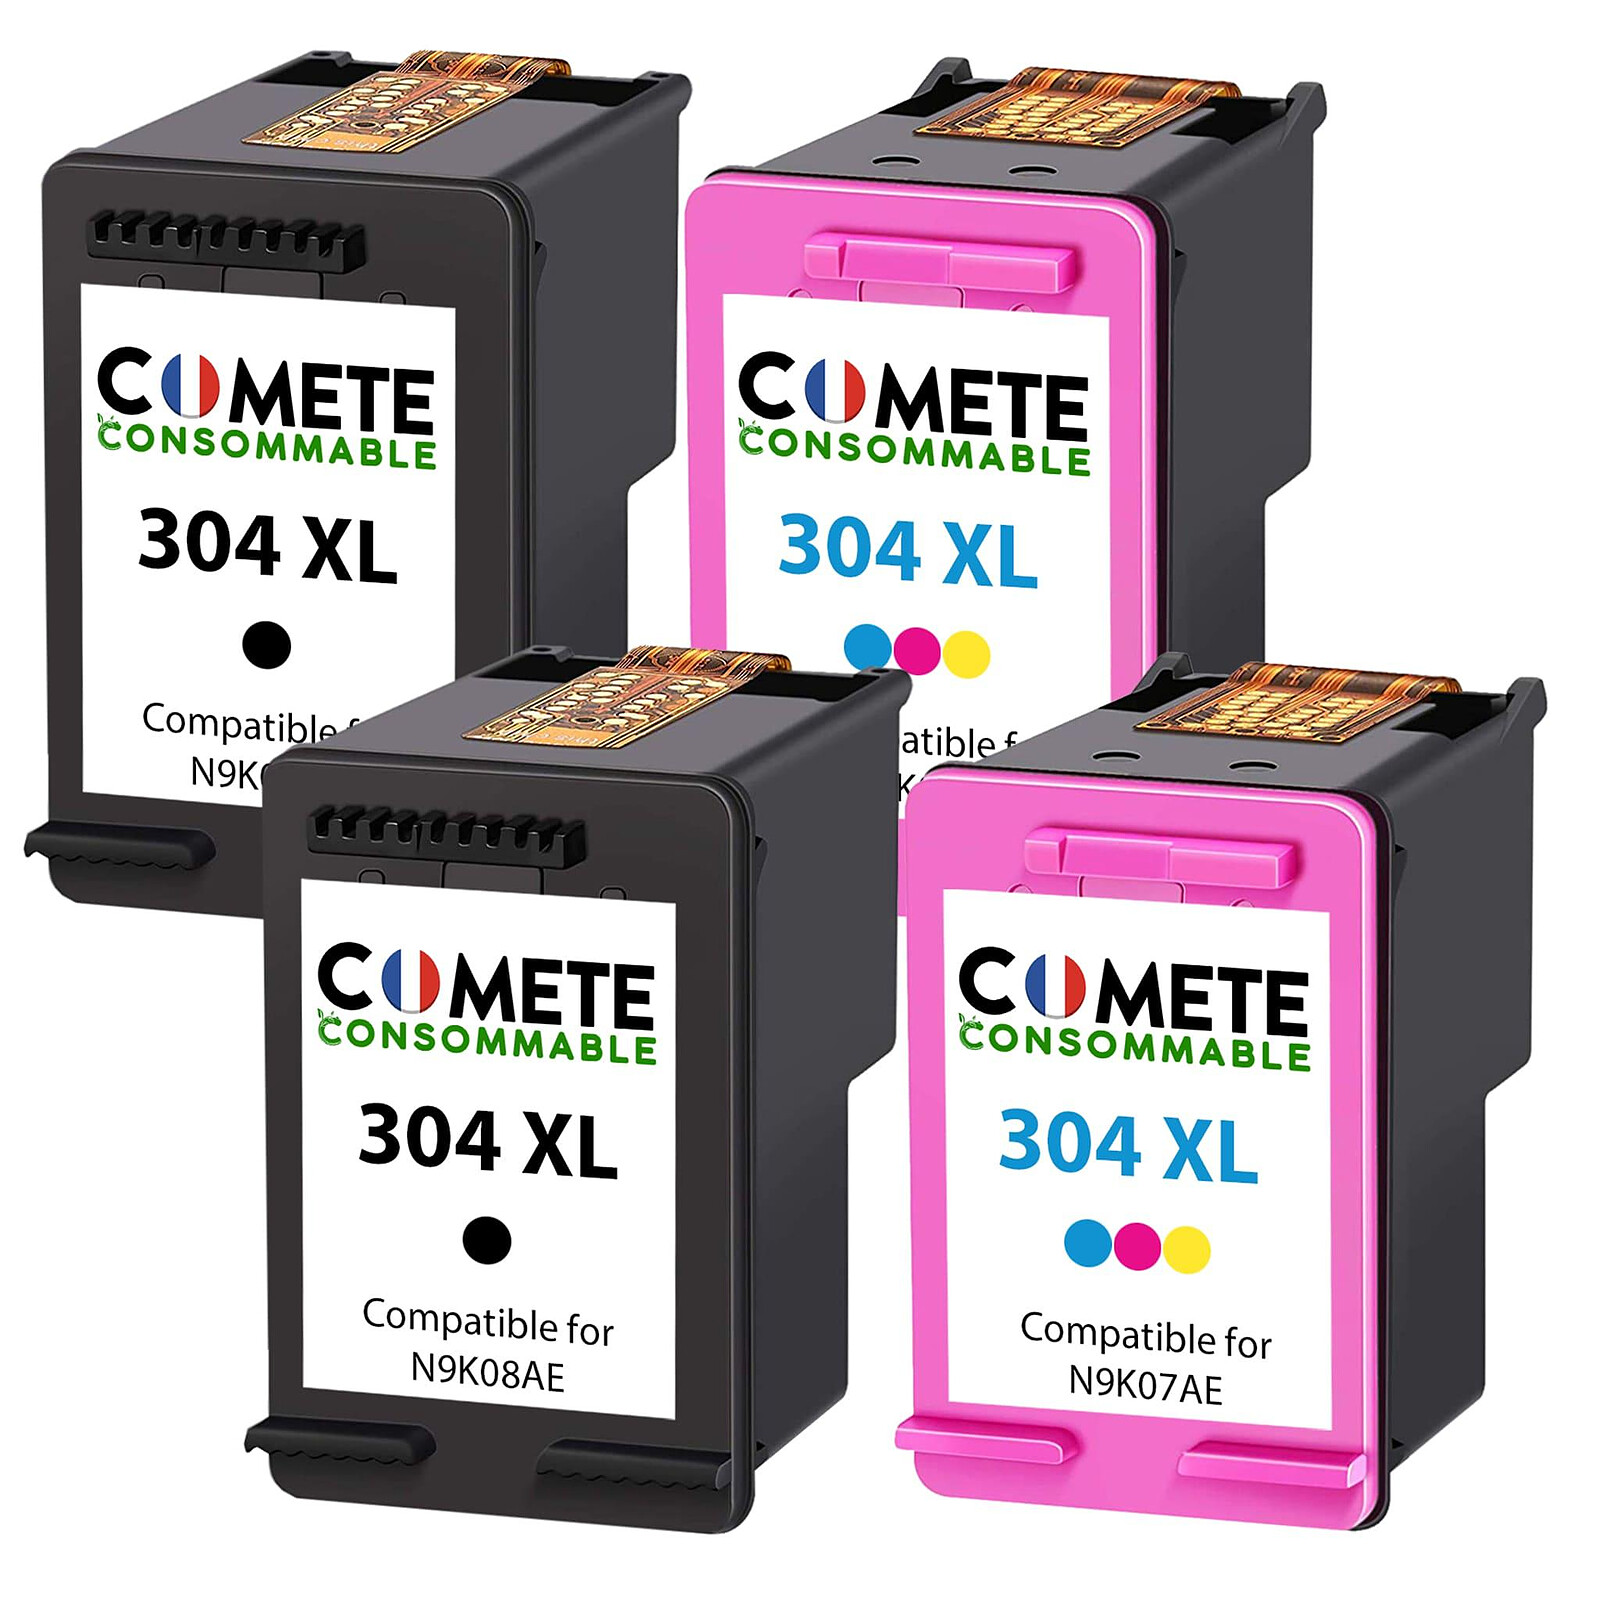 COMETE - 963XL - 5 cartouches compatibles avec HP 963XL 963XL - Noir et  couleur - Marque française - Cartouche imprimante - LDLC